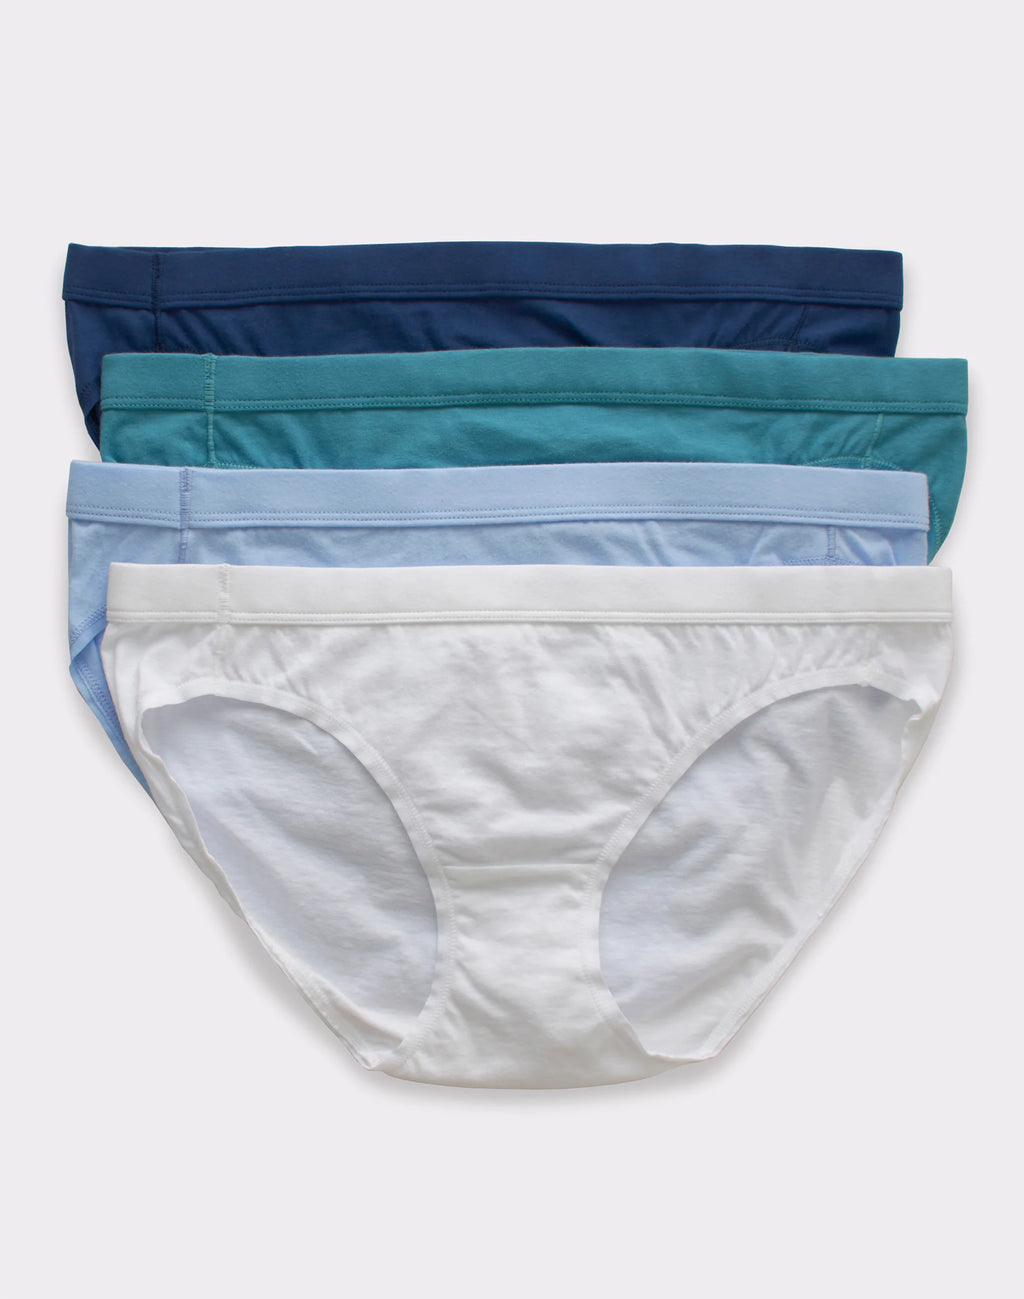 Hanes Girls' Underwear Pack, 100% Cotton Bikini Algeria